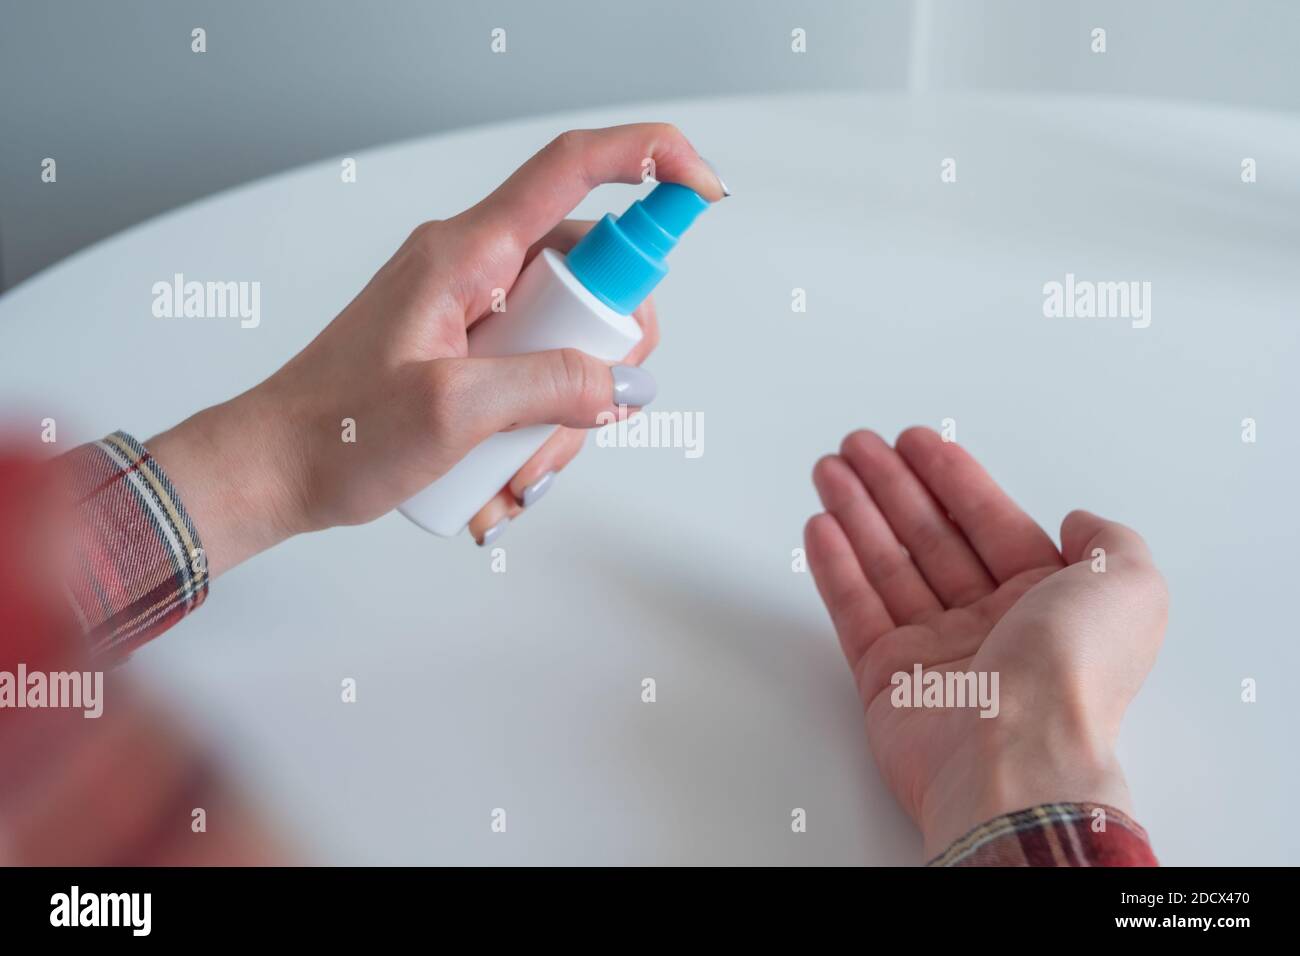 Femme pulvérisant un antiseptique sur les mains - gros plan - pulvérisation désinfection Banque D'Images